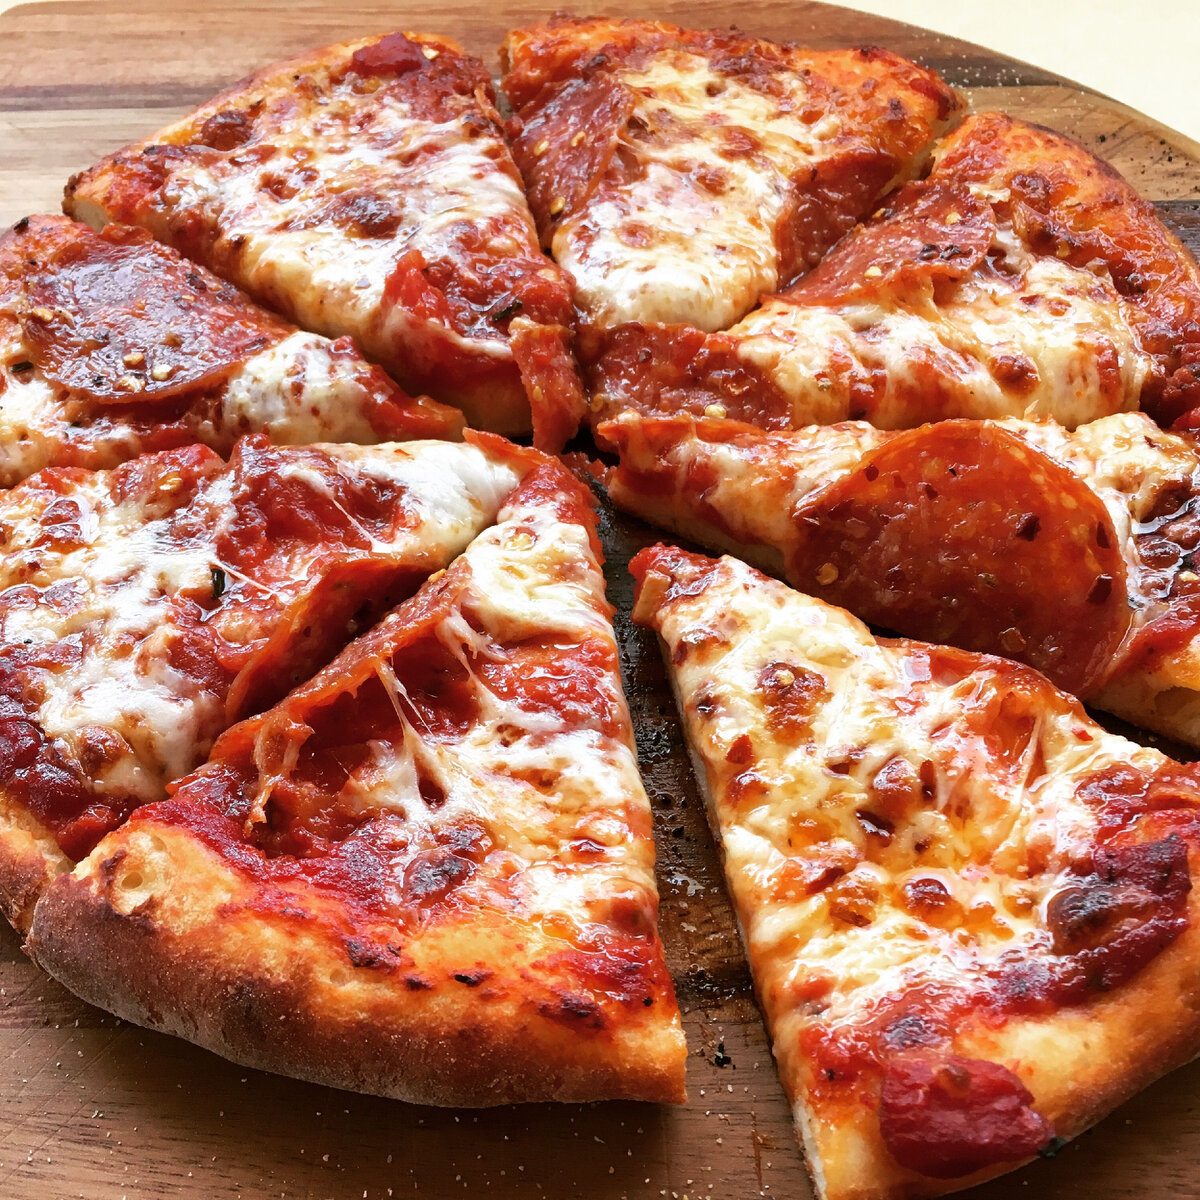 я здесь для обучения мне нужна половина из четырех пицц пепперони хорошая пицца фото 70